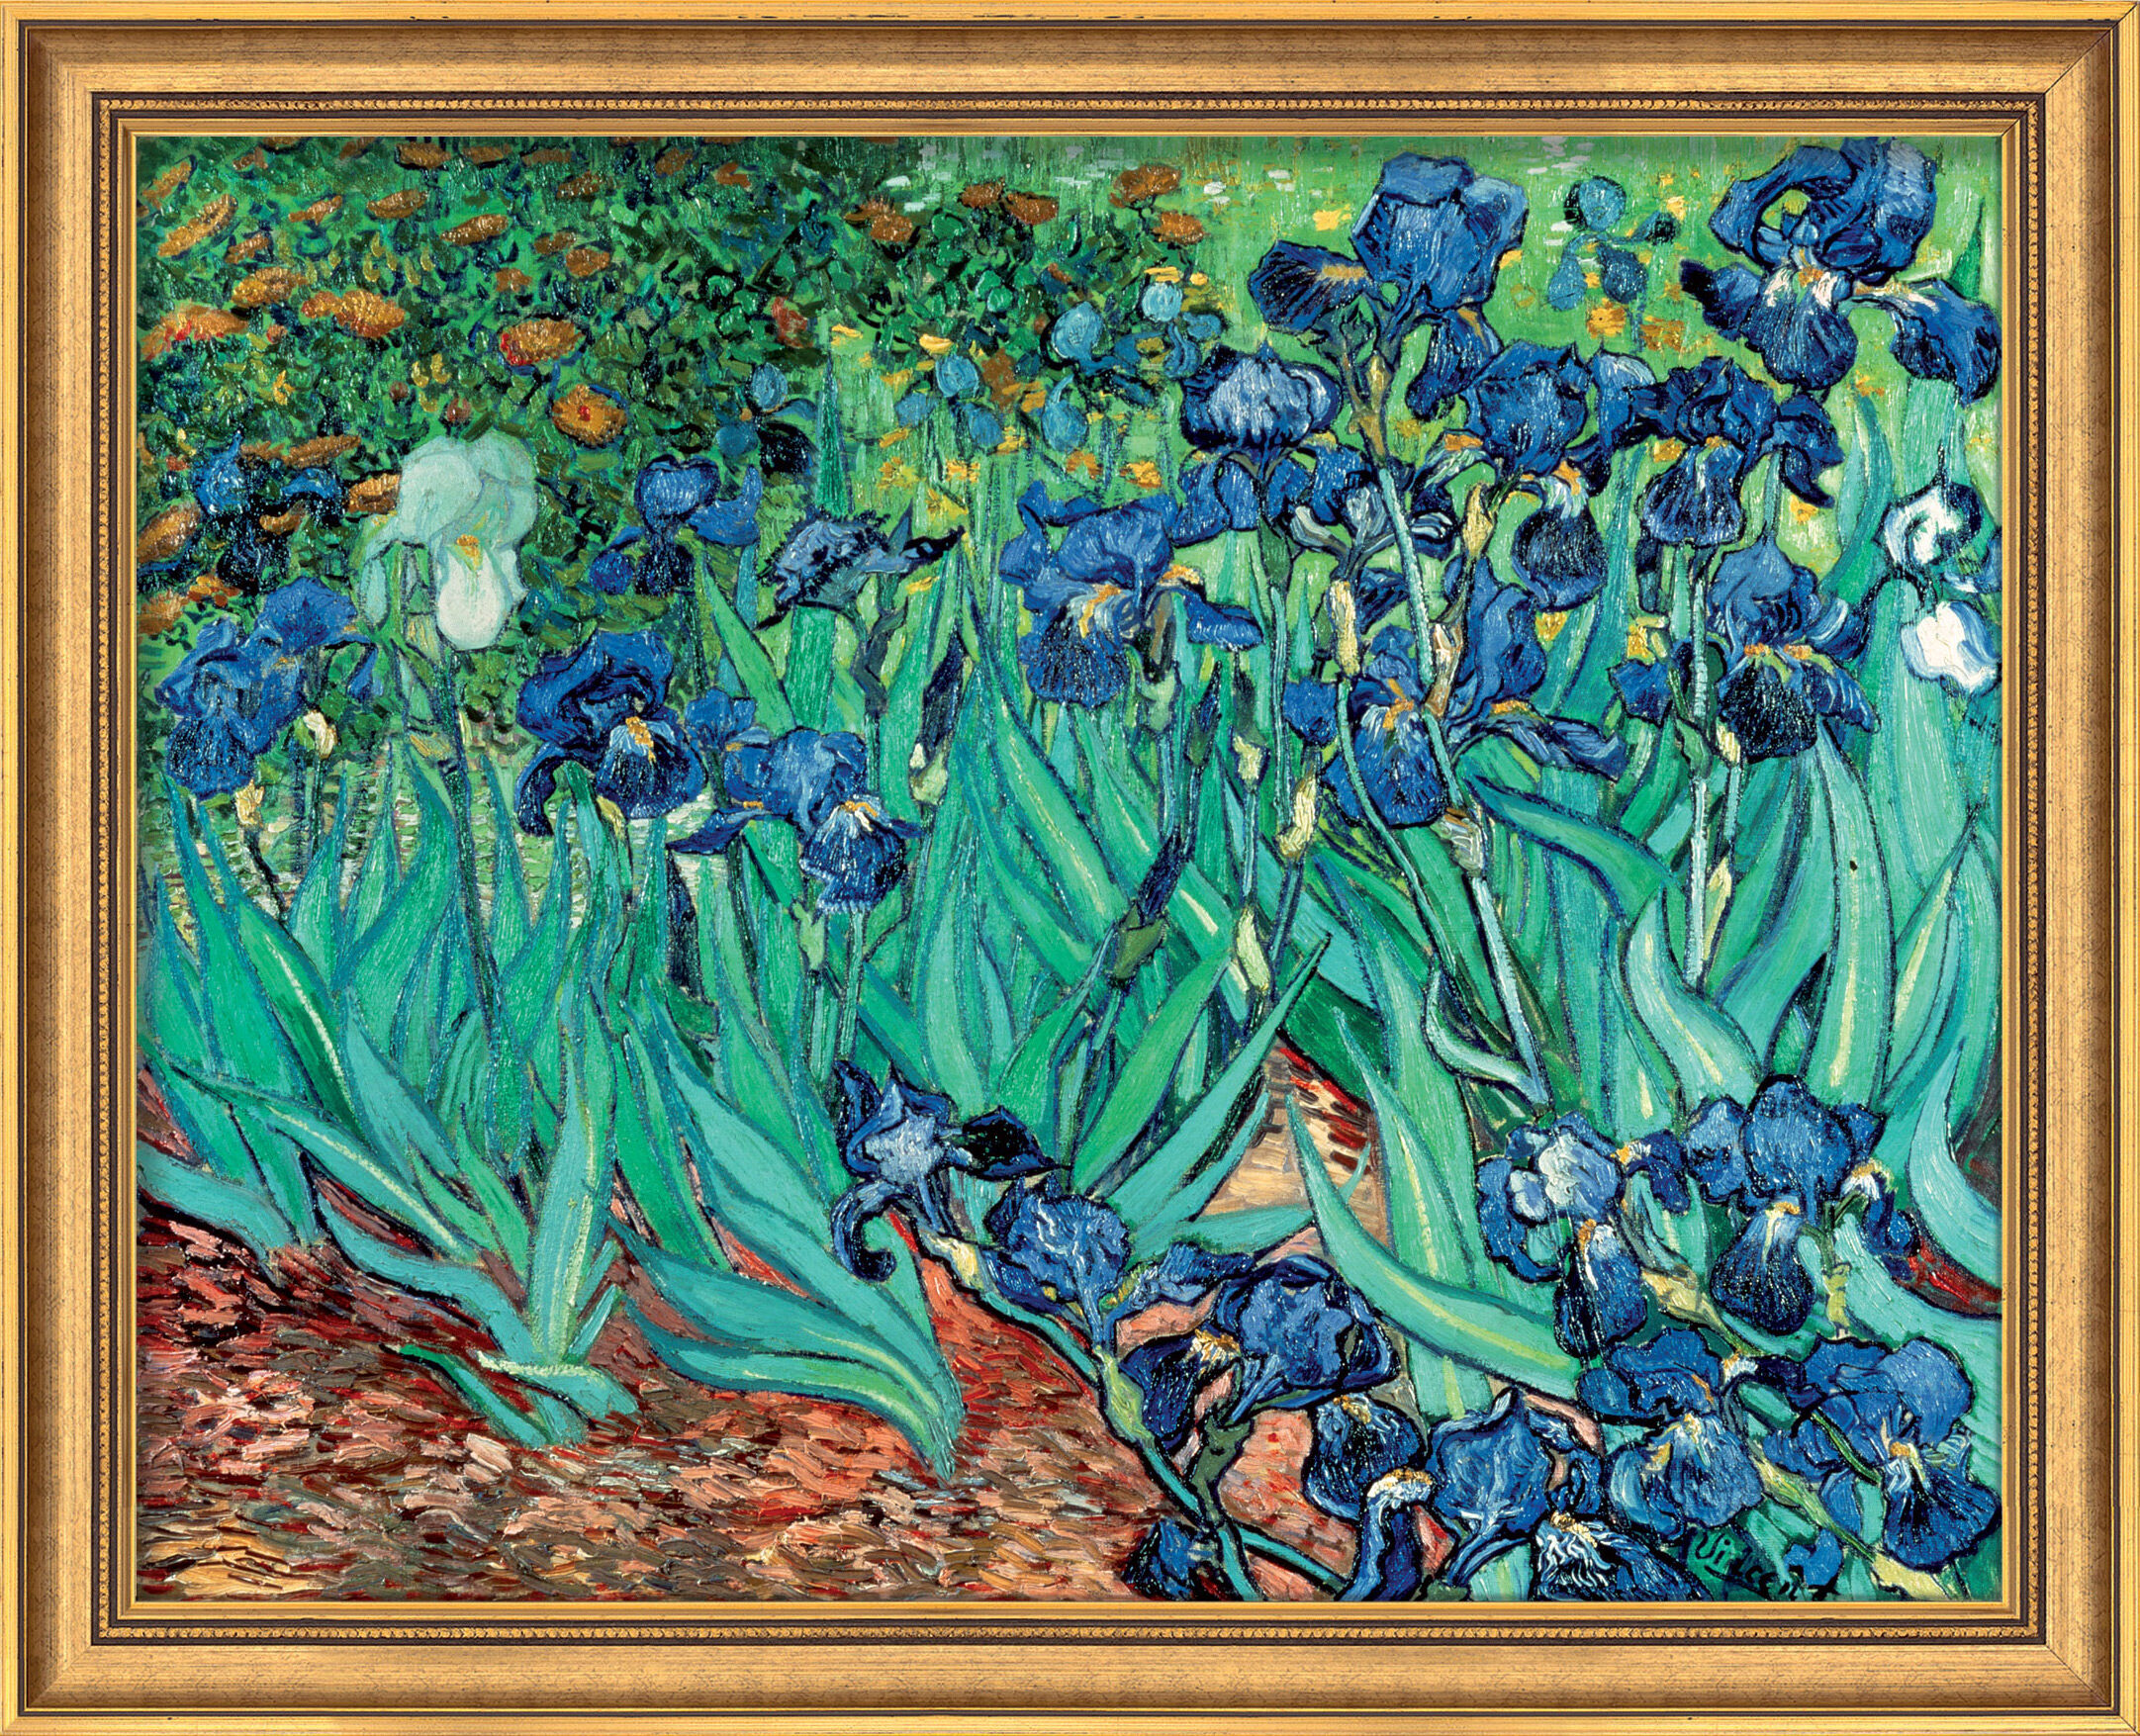 Tableau "Iris" (1889), encadré von Vincent van Gogh